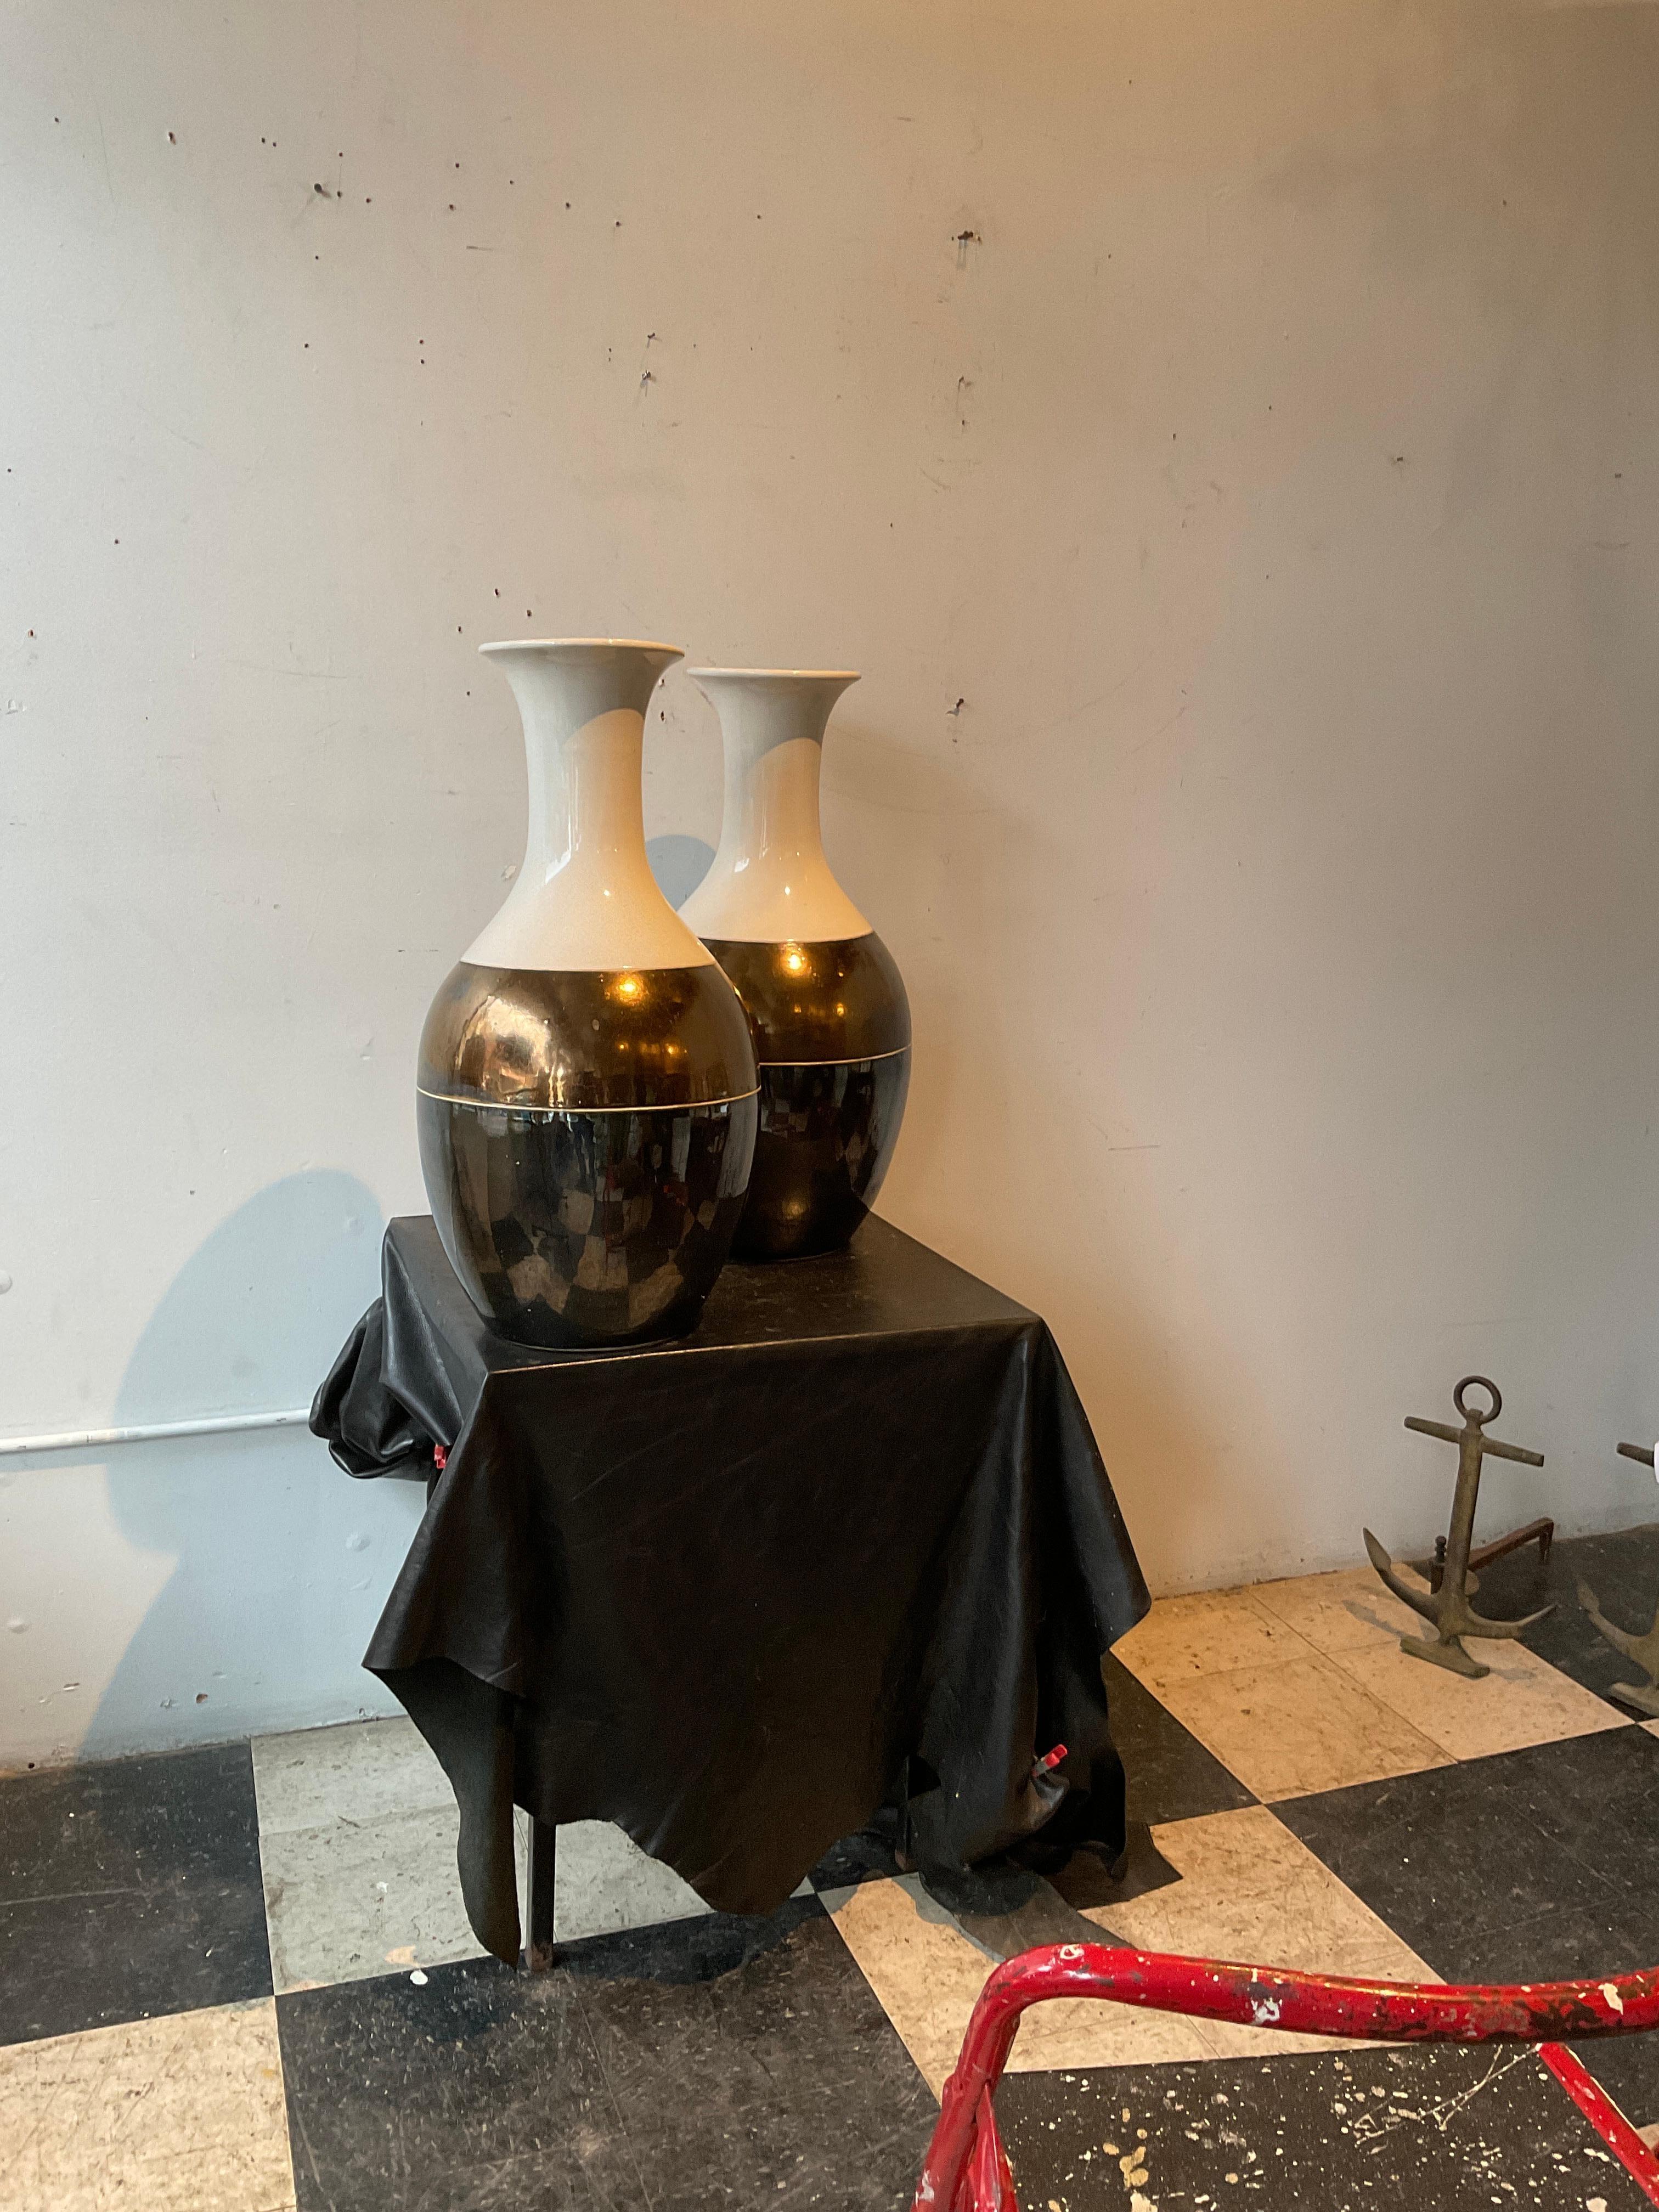 Pair of Interlude ceramic vases in a metallic finish.